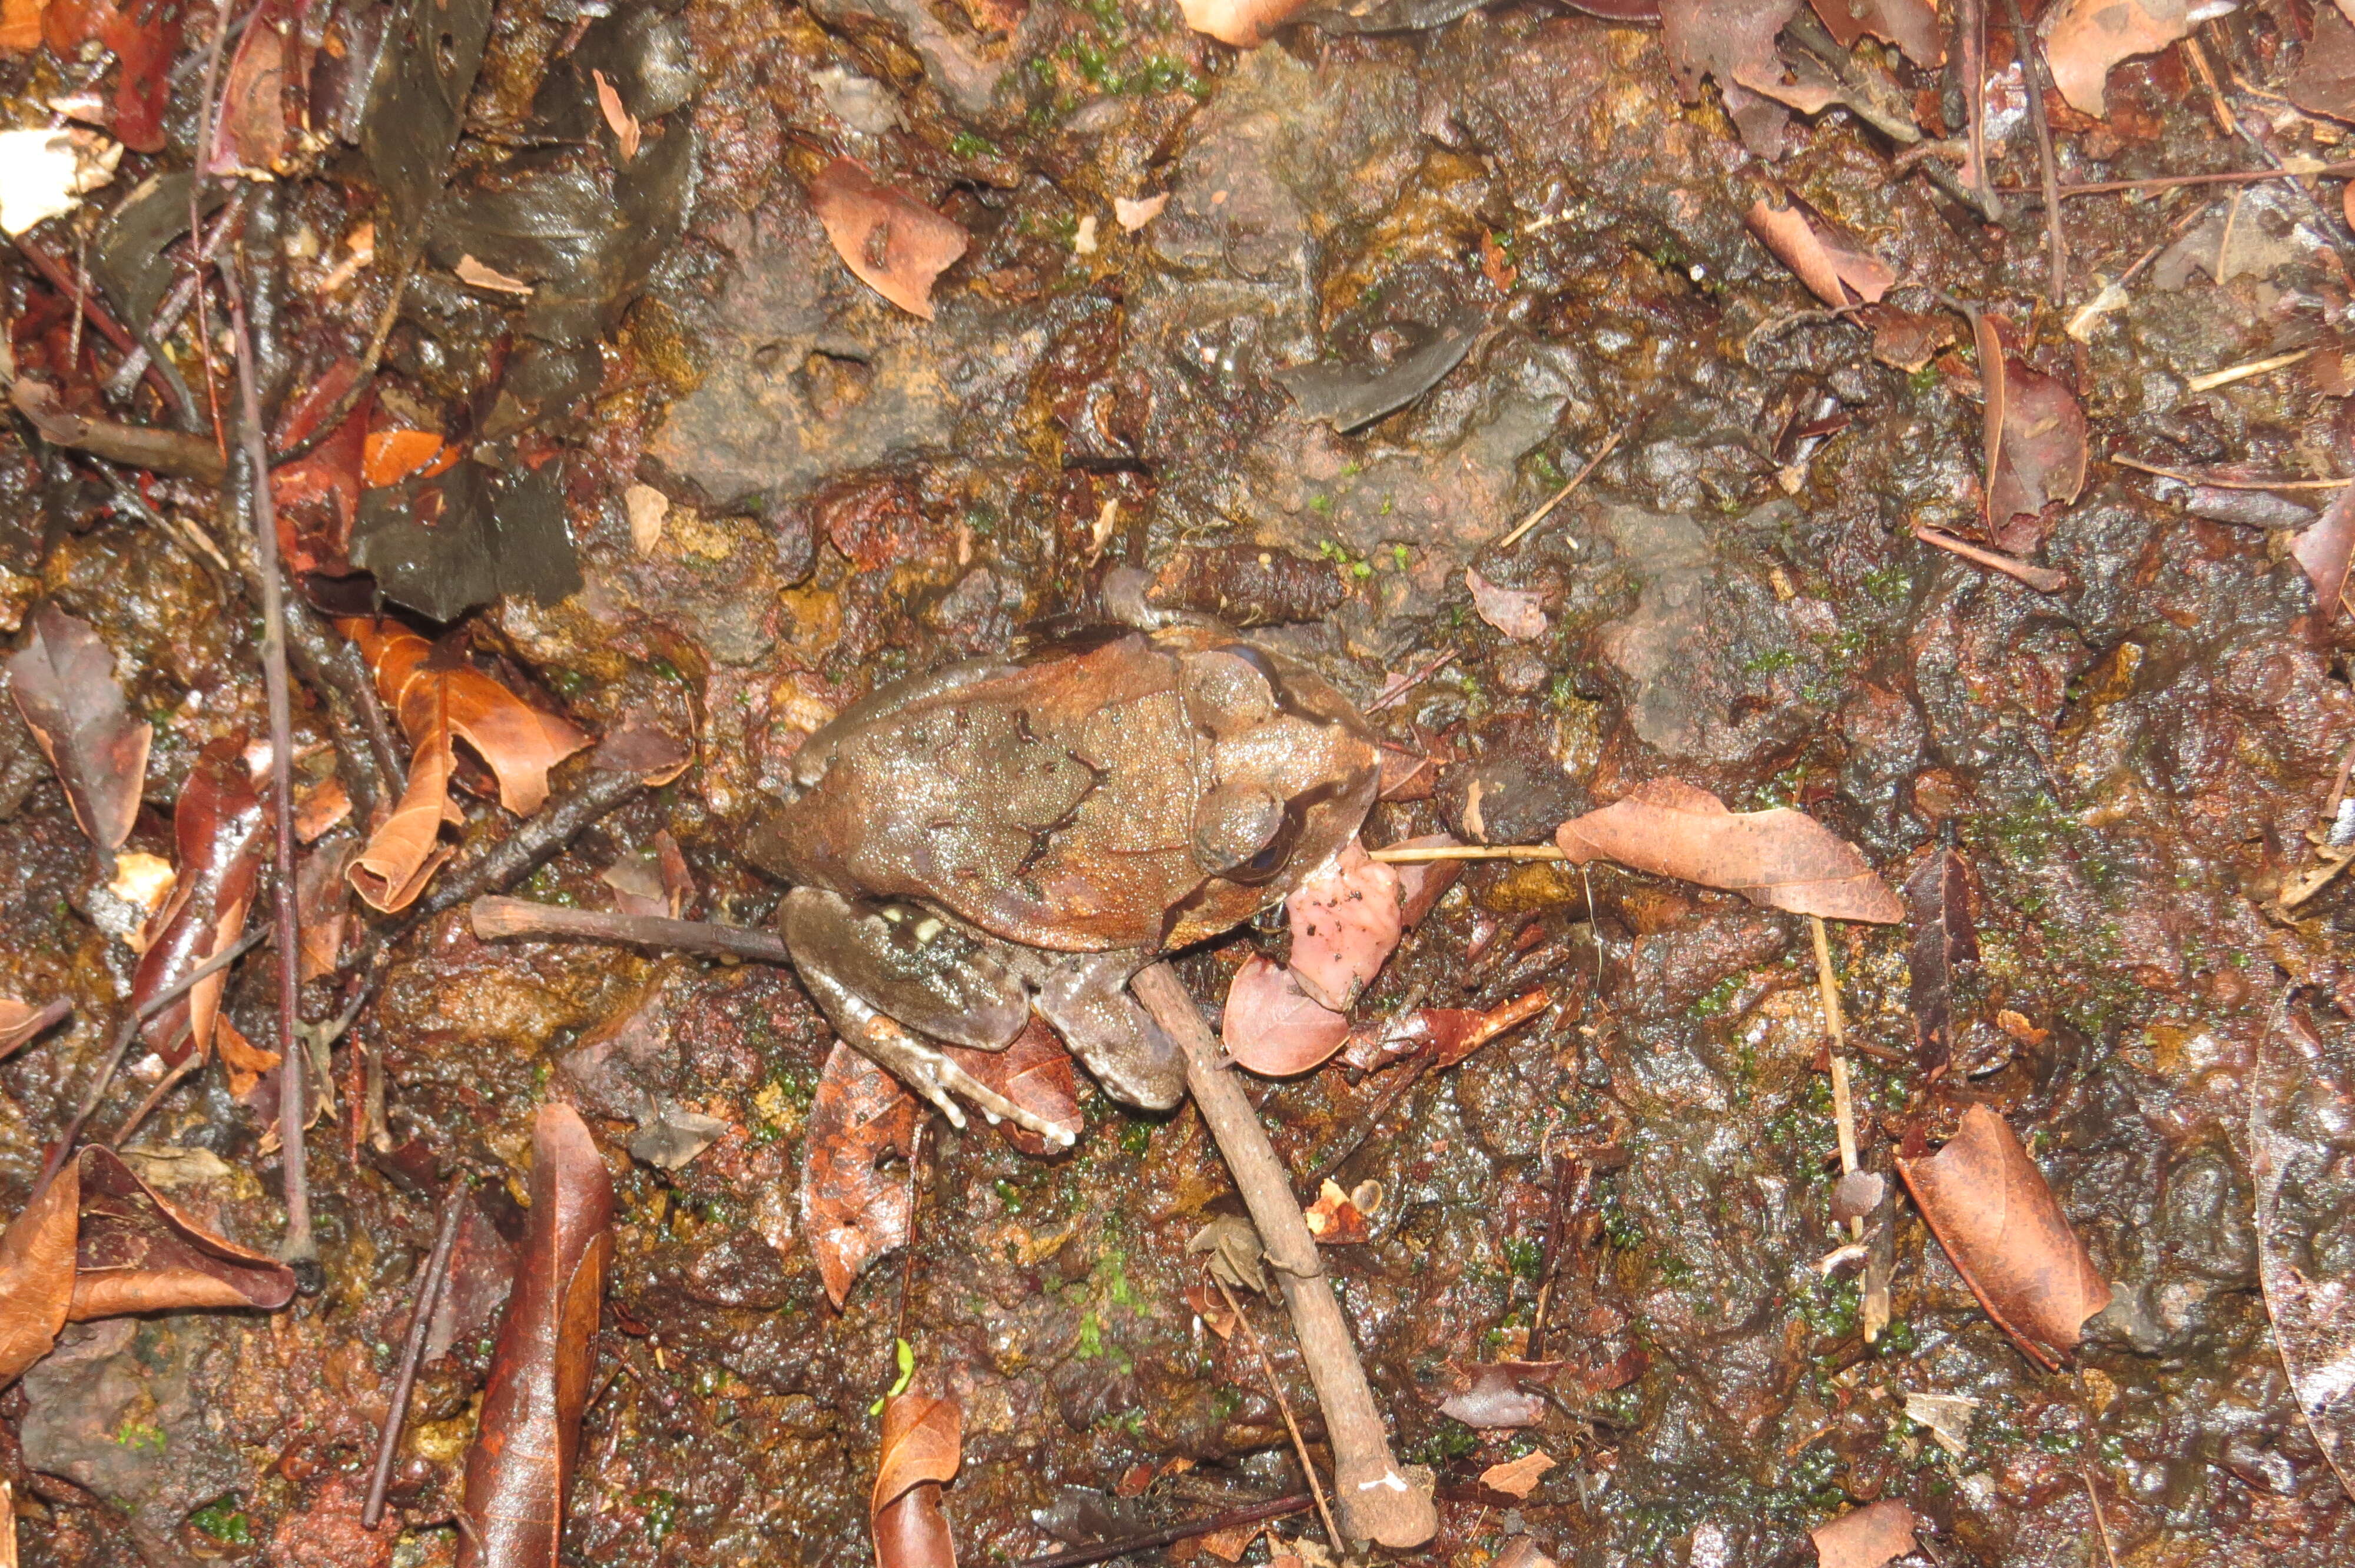 Image of Burrowing frog